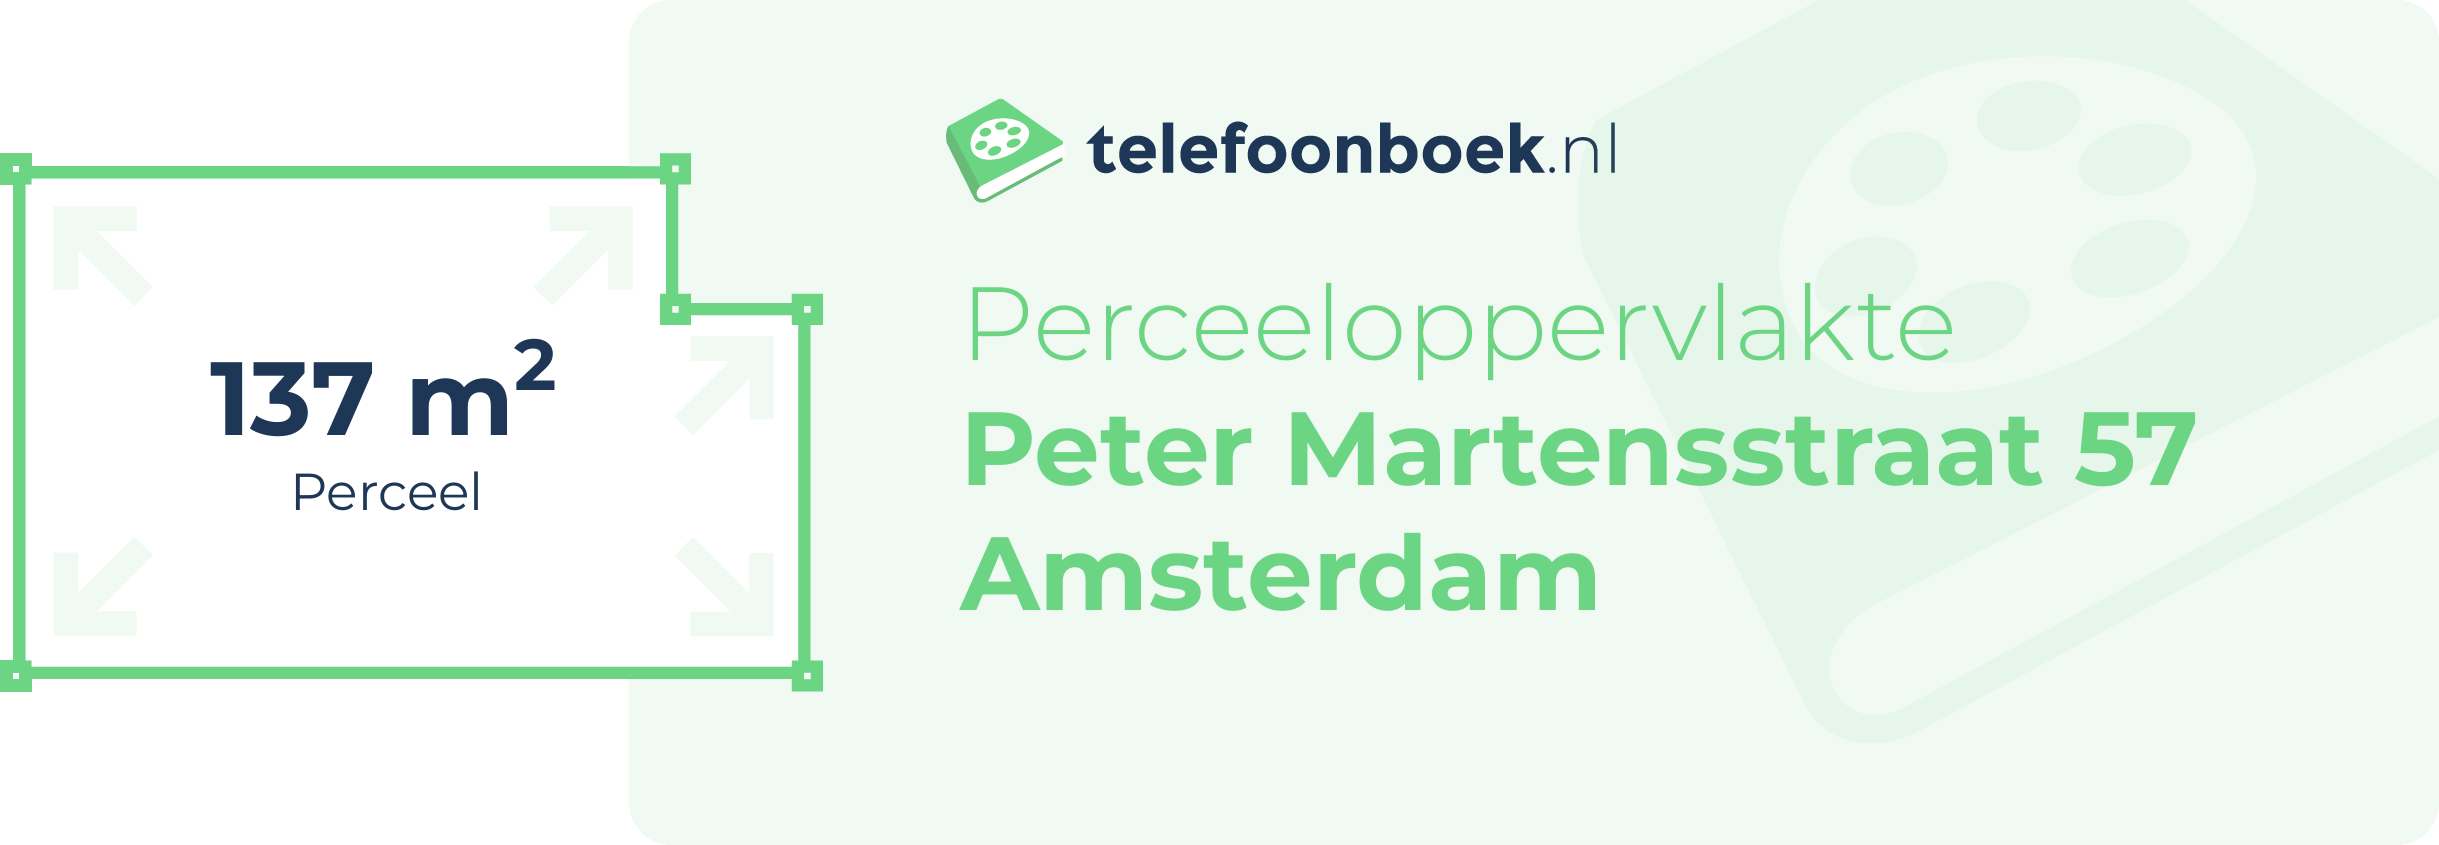 Perceeloppervlakte Peter Martensstraat 57 Amsterdam